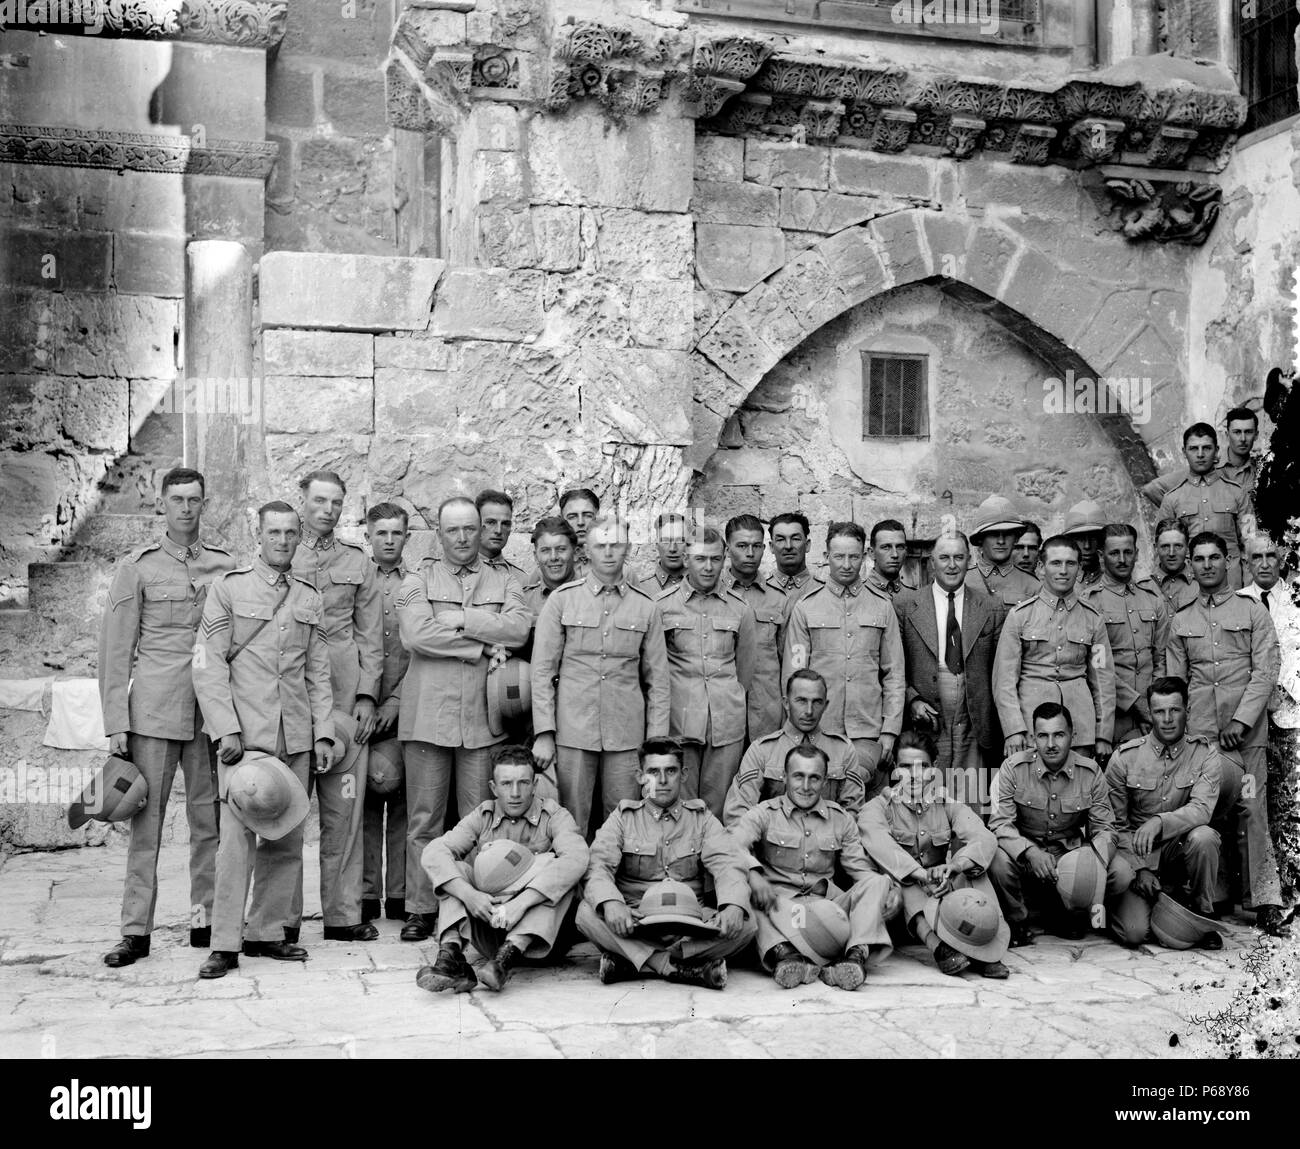 Photographie d'un groupe militaire britannique à Jérusalem dans la cour de l'église Saint Sépulcre pendant le mandat de la Palestine. Datée 1920 Banque D'Images